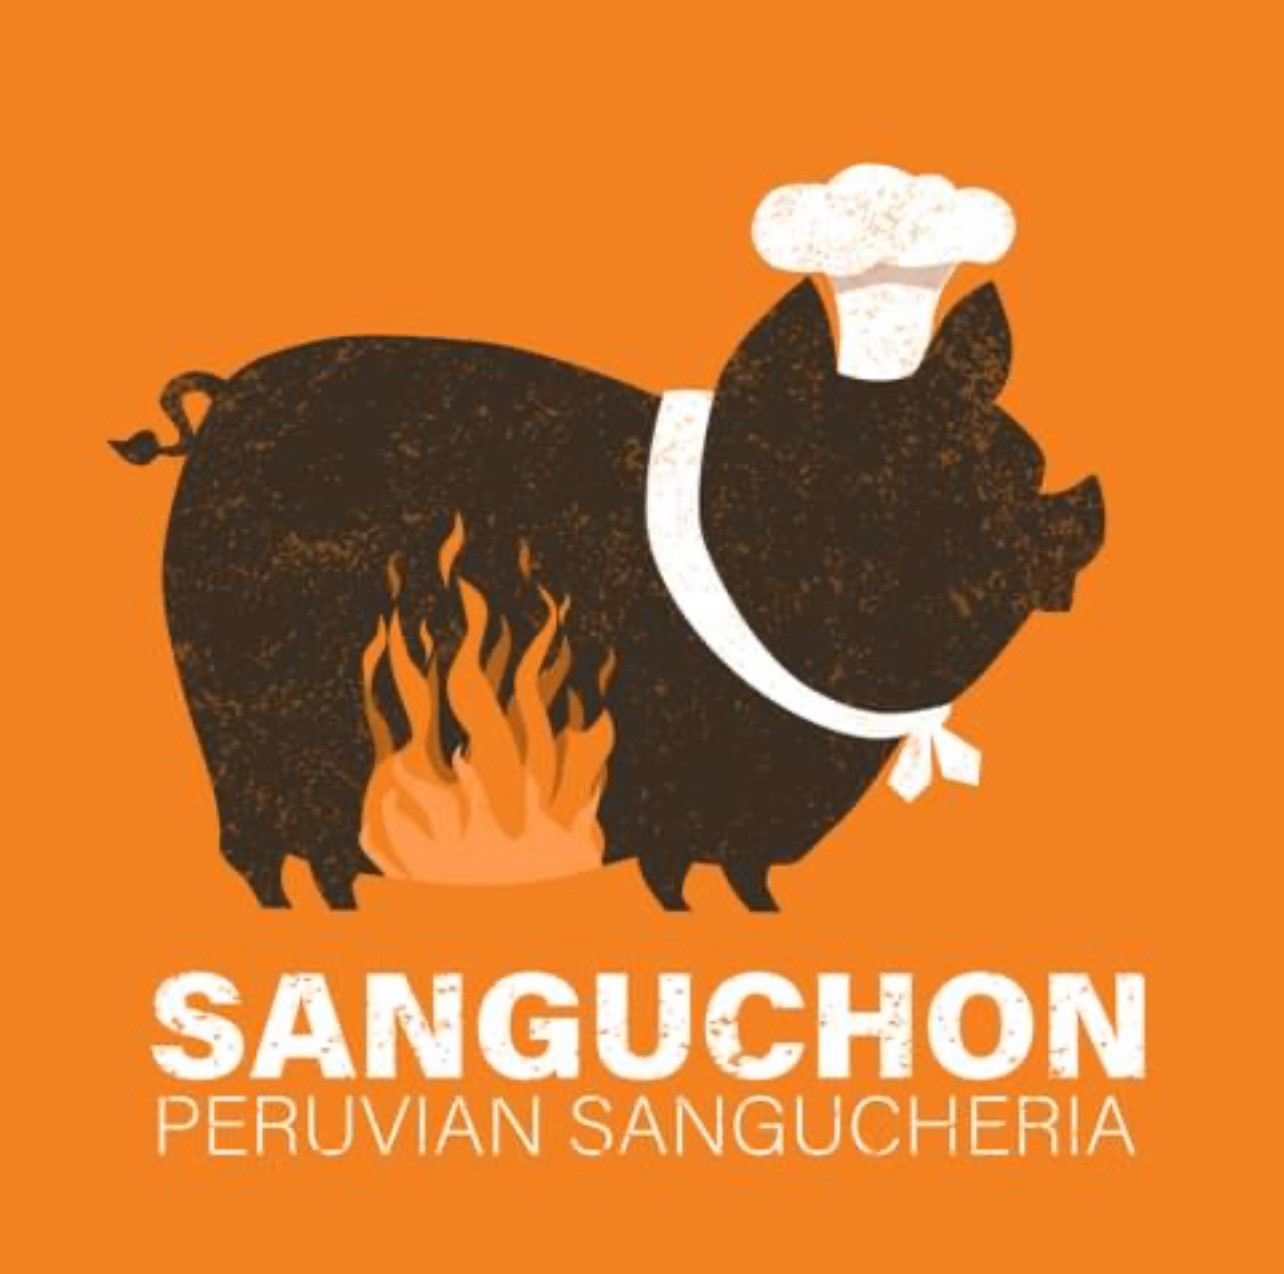 Sanguchon Eatery